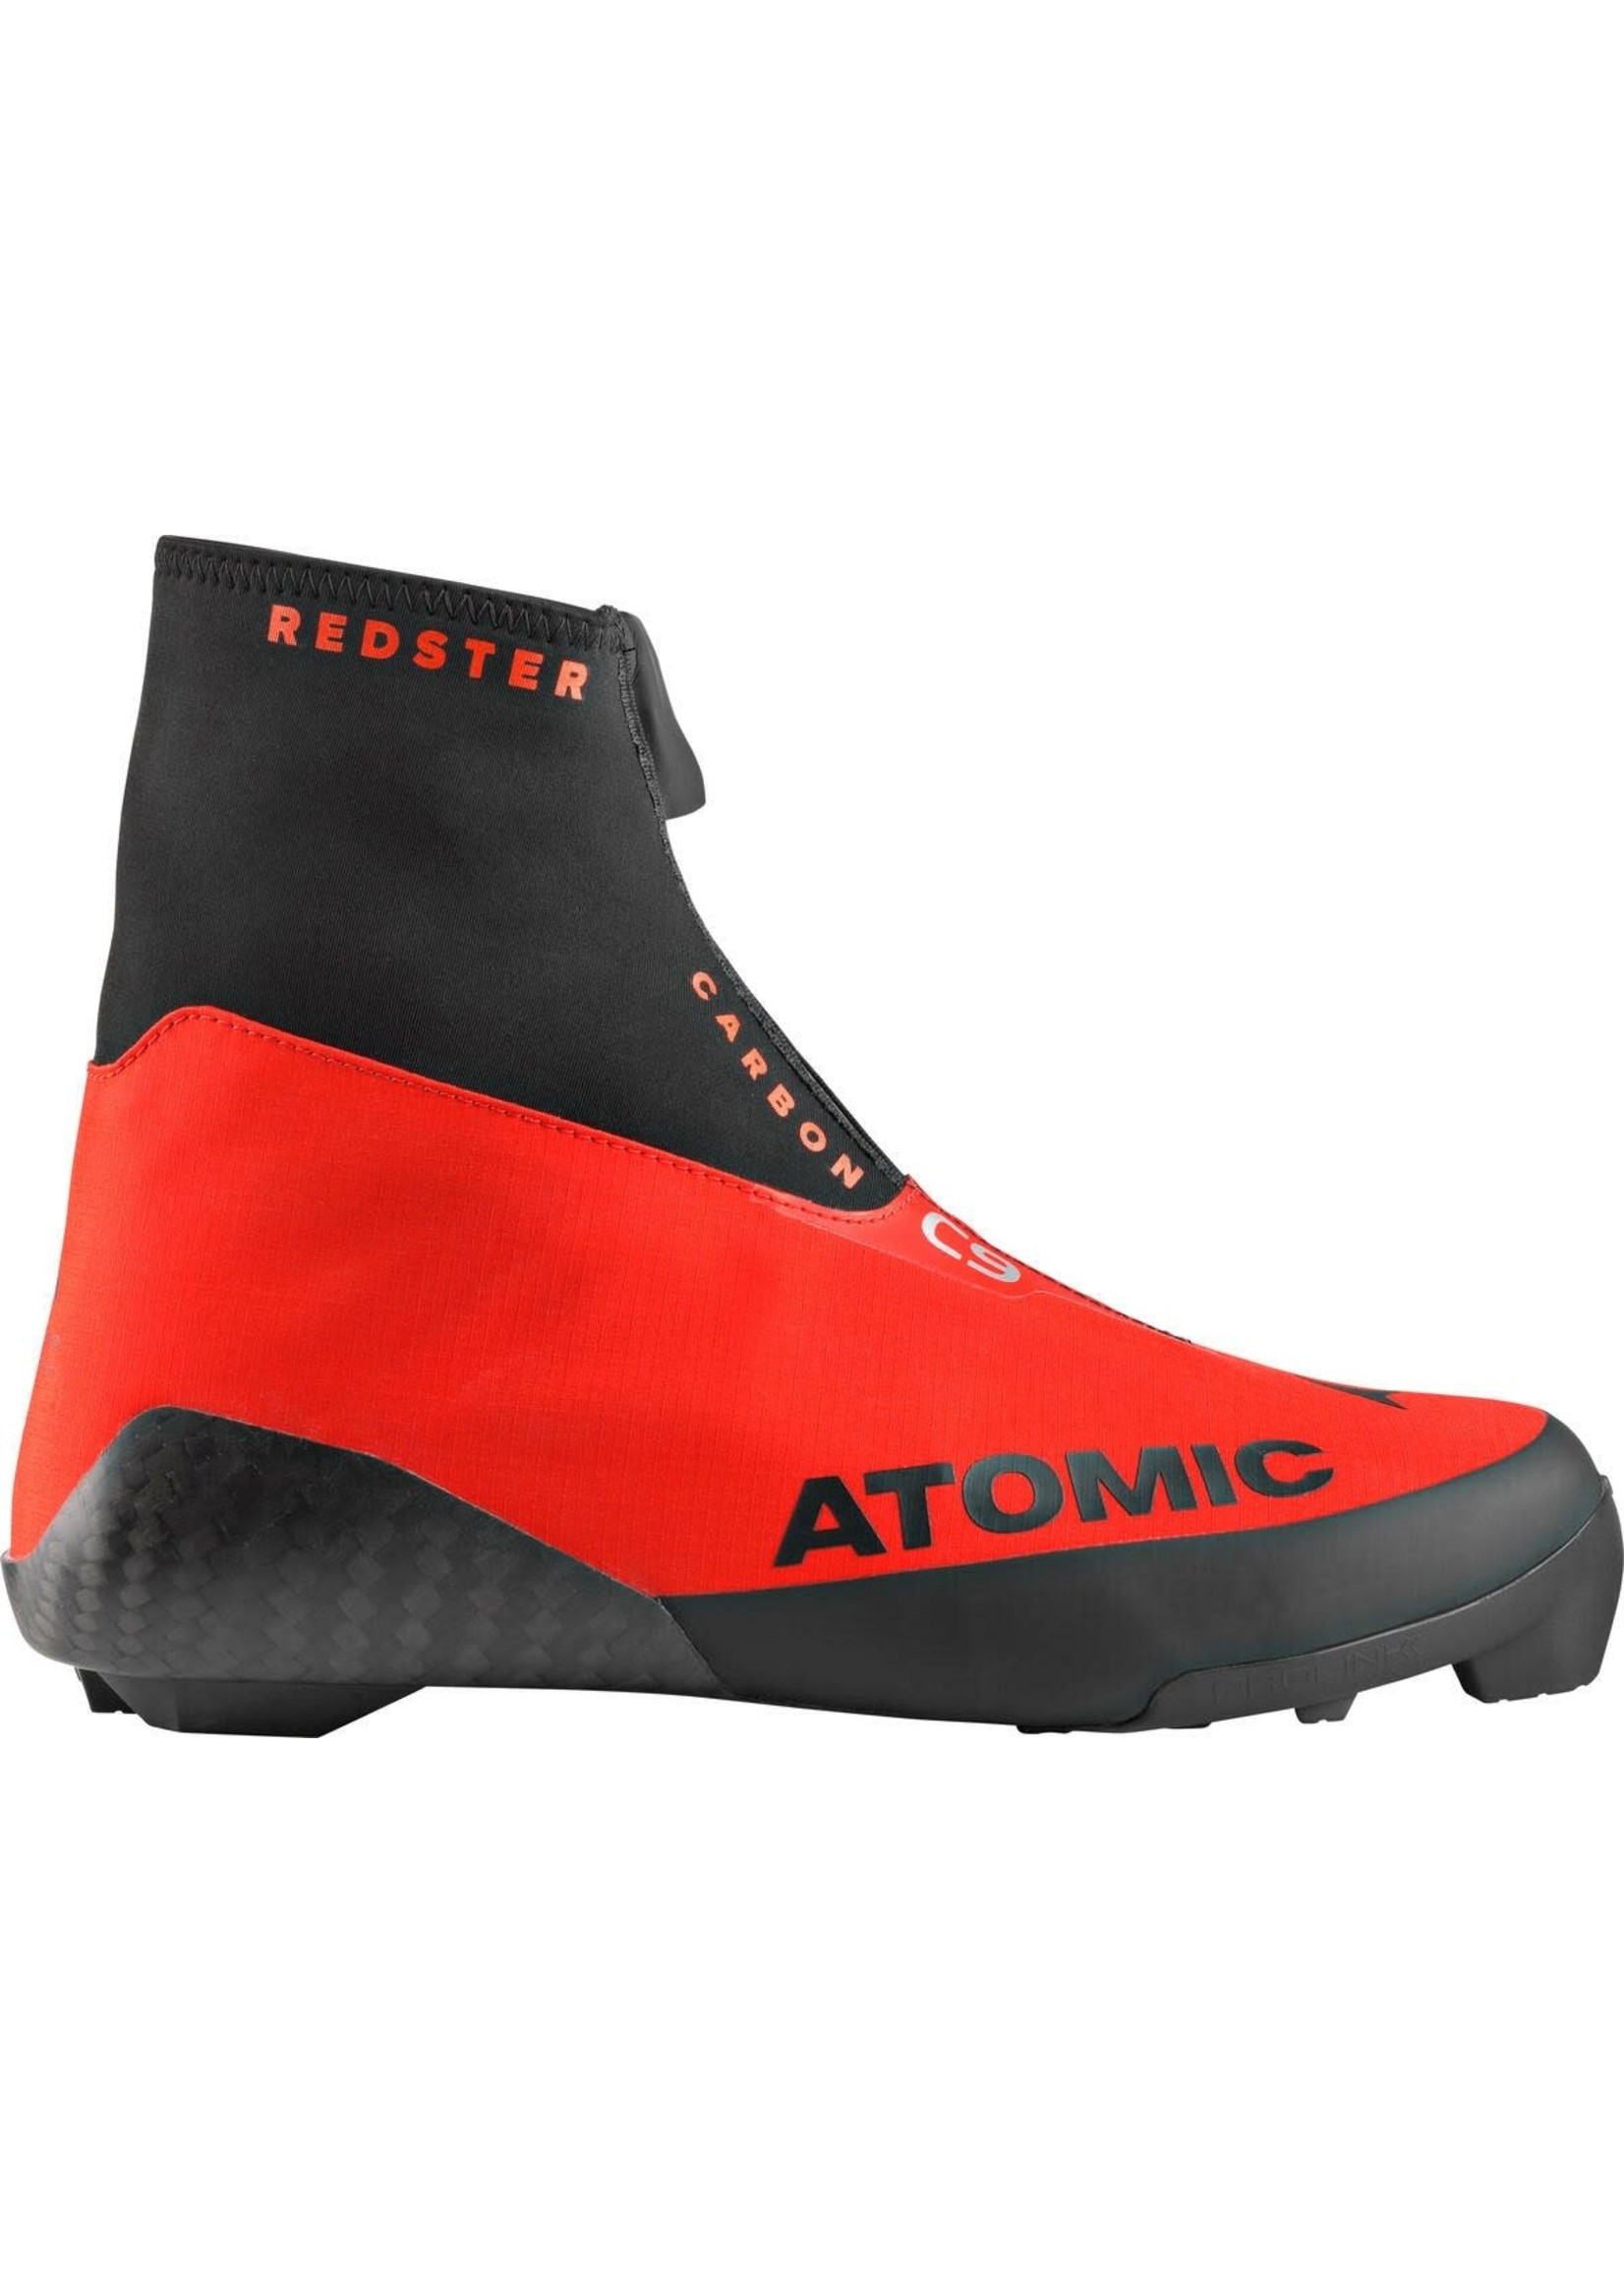 Atomic Redster C9 Carbon 2020 d'Atomic (Bottes de ski de fond classique)